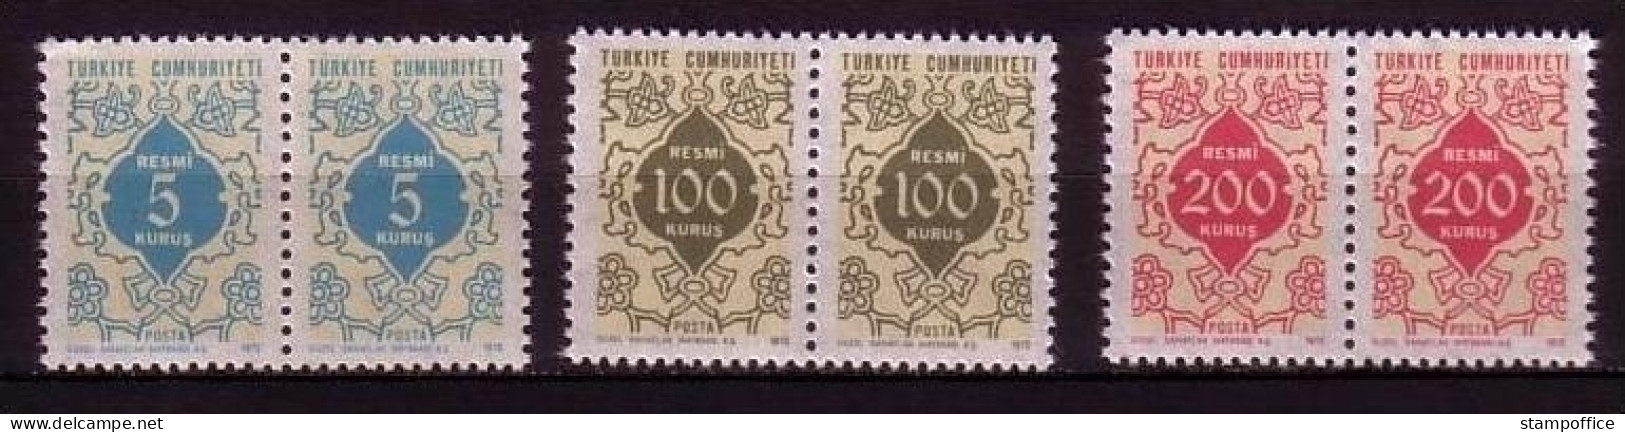 TÜRKEI DIENSTMARKEN MI-NR. 130-132 POSTFRISCH(MINT) Pärchen ORNAMENTE - Dienstzegels